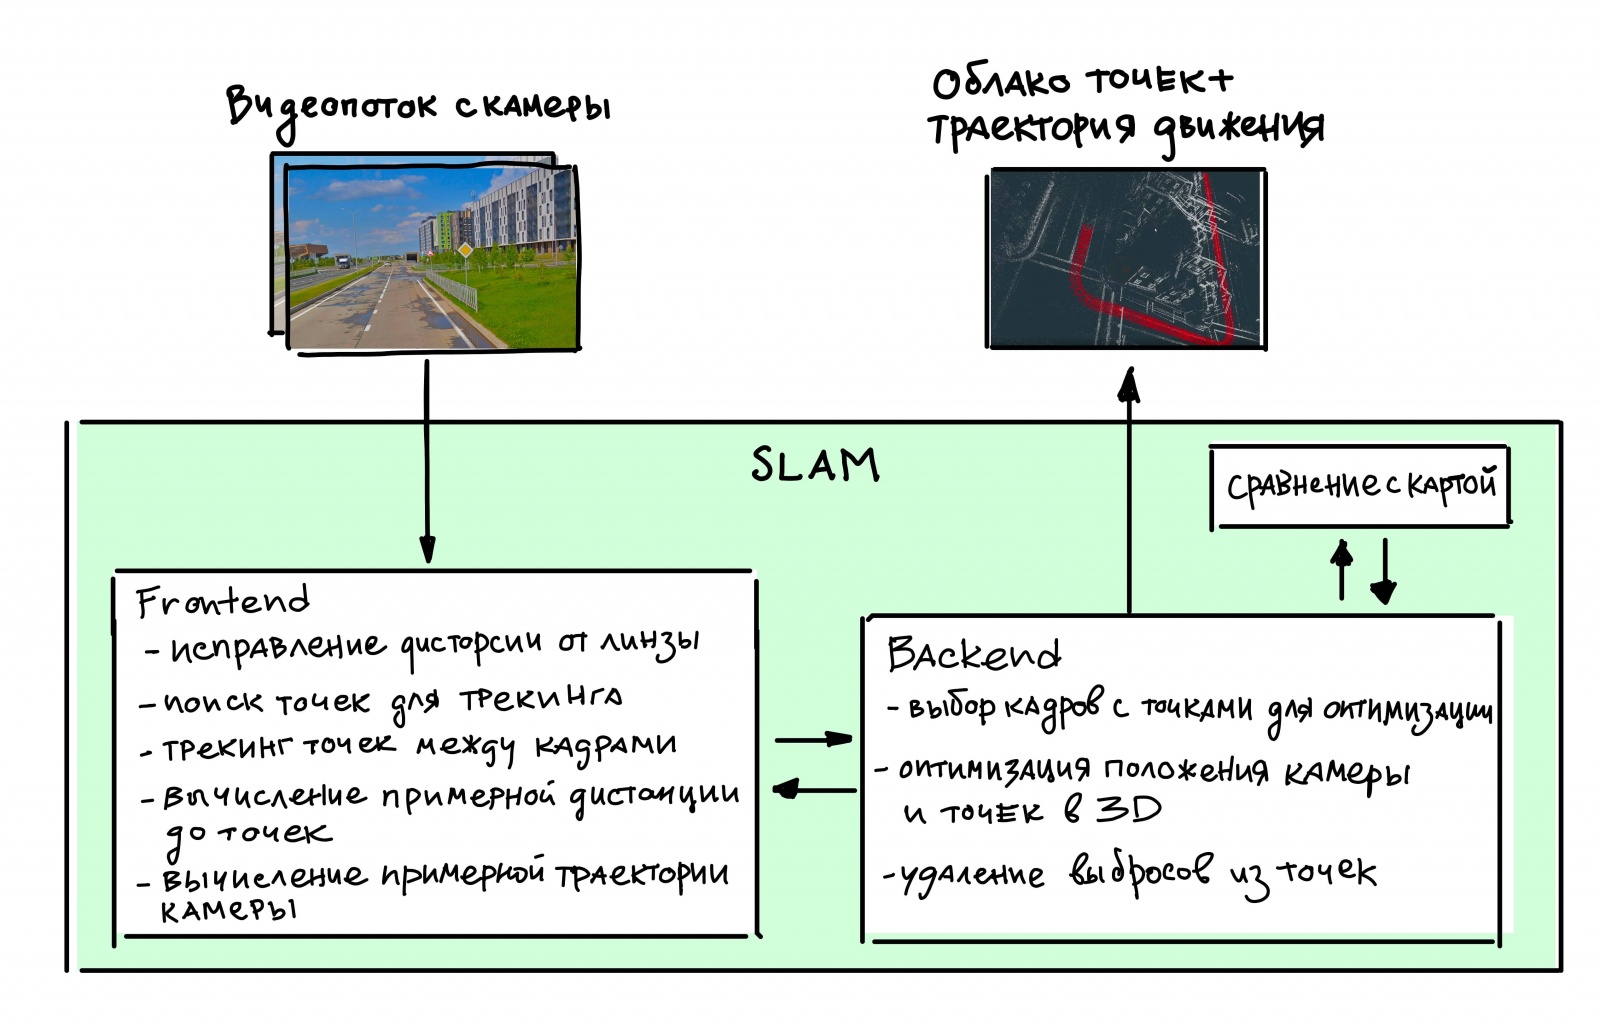 Общая схема работы SLAM, точнее, Visual SLAM, так как здесь показана работа с изображениями